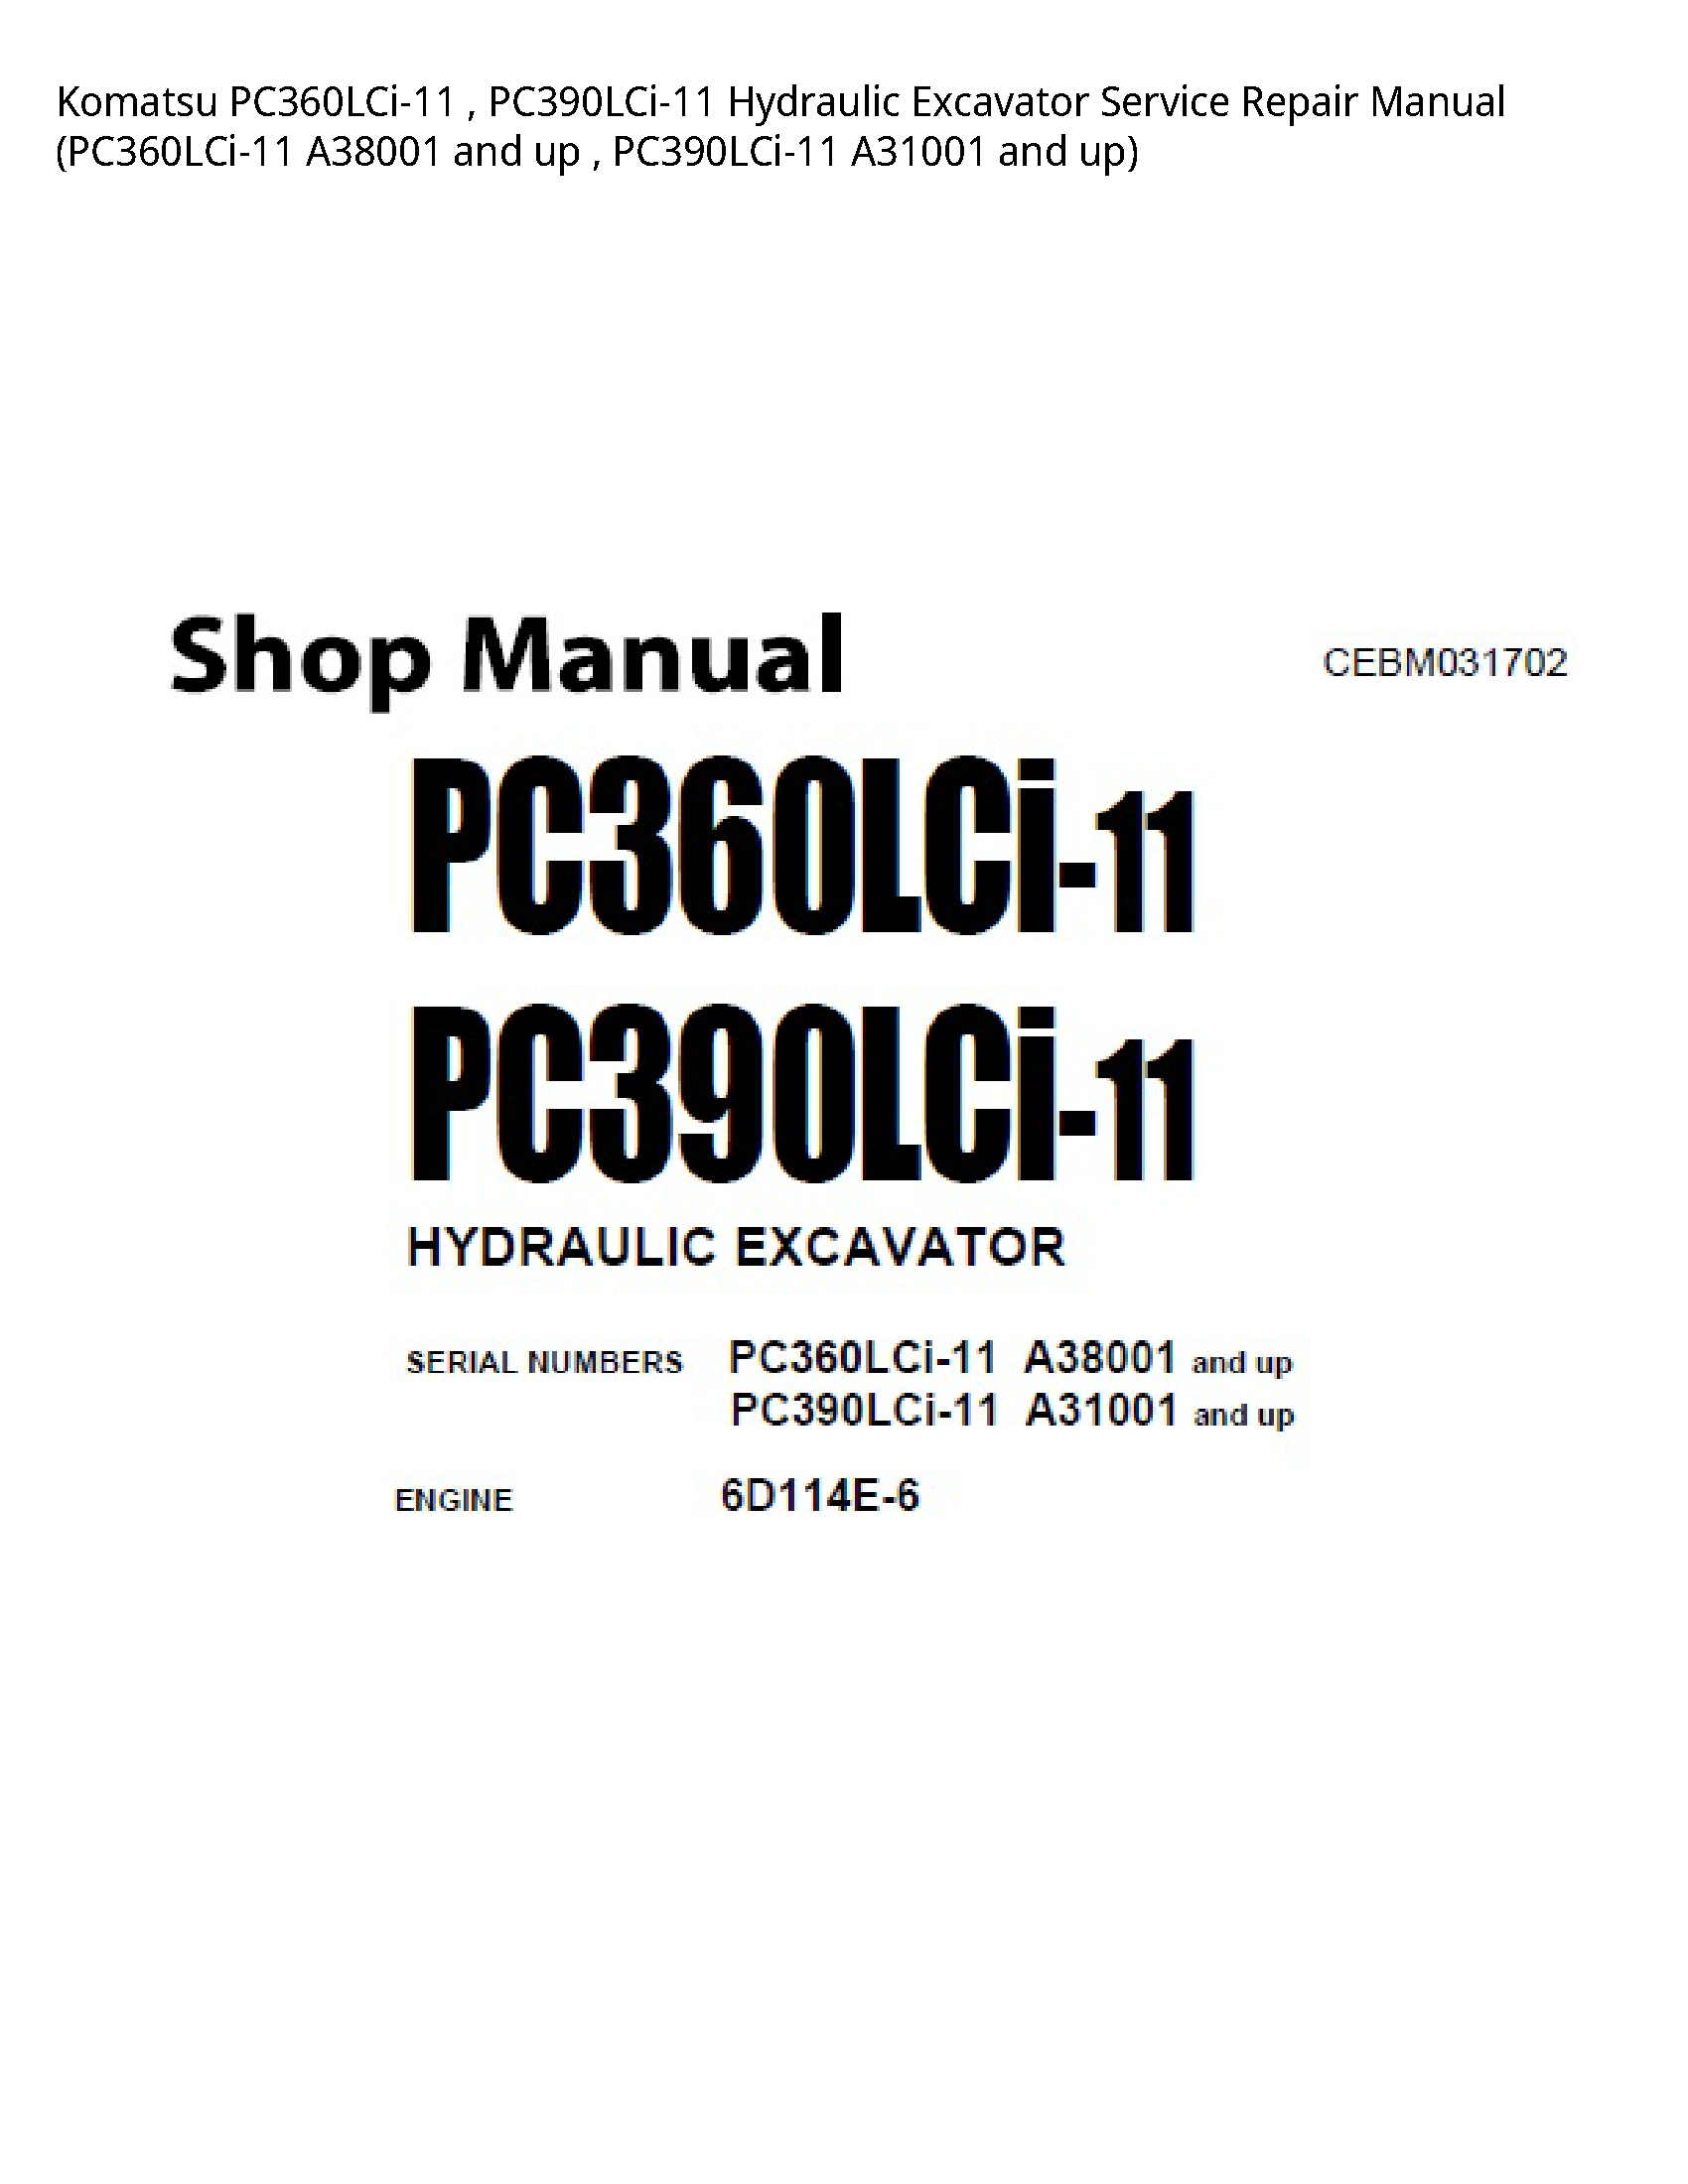 KOMATSU PC360LCi-11 Hydraulic Excavator manual